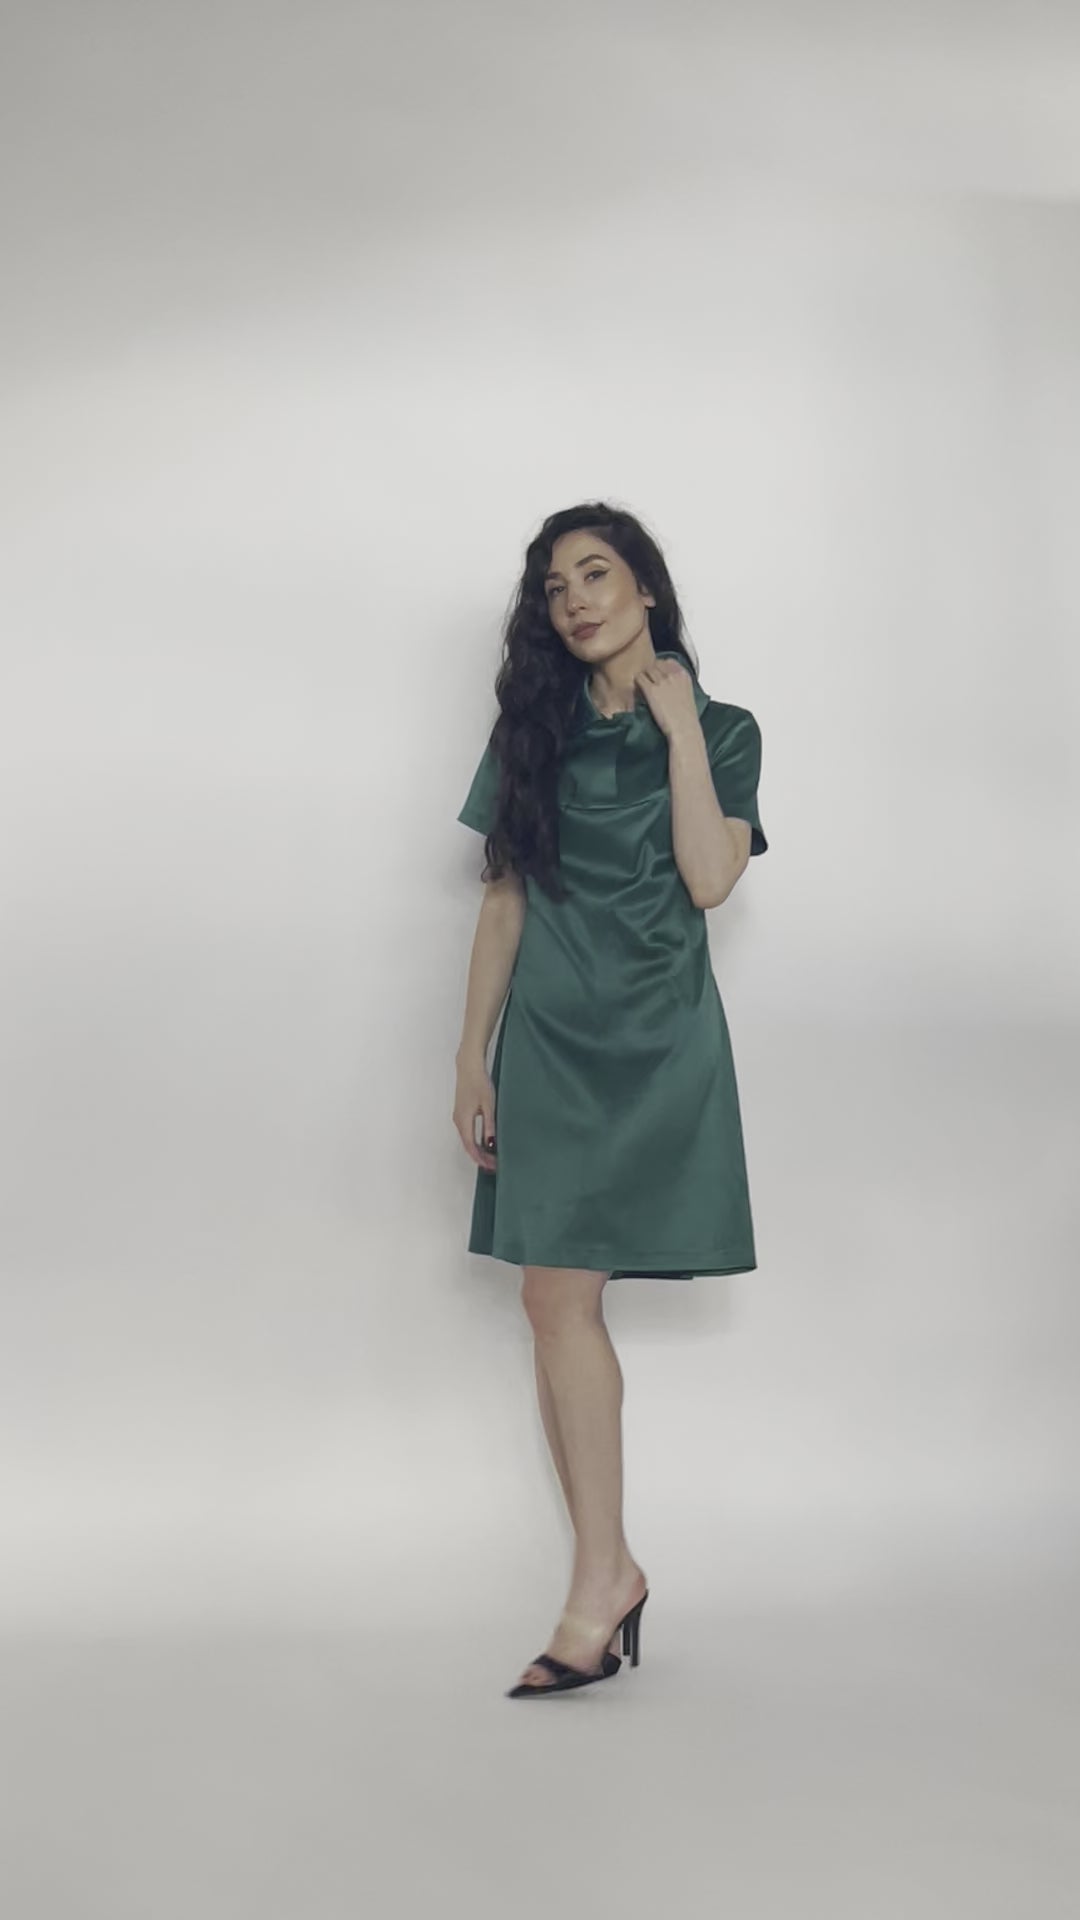 Emerald Green Stud Collar Shirt Dress - video of model showing the shirt dress